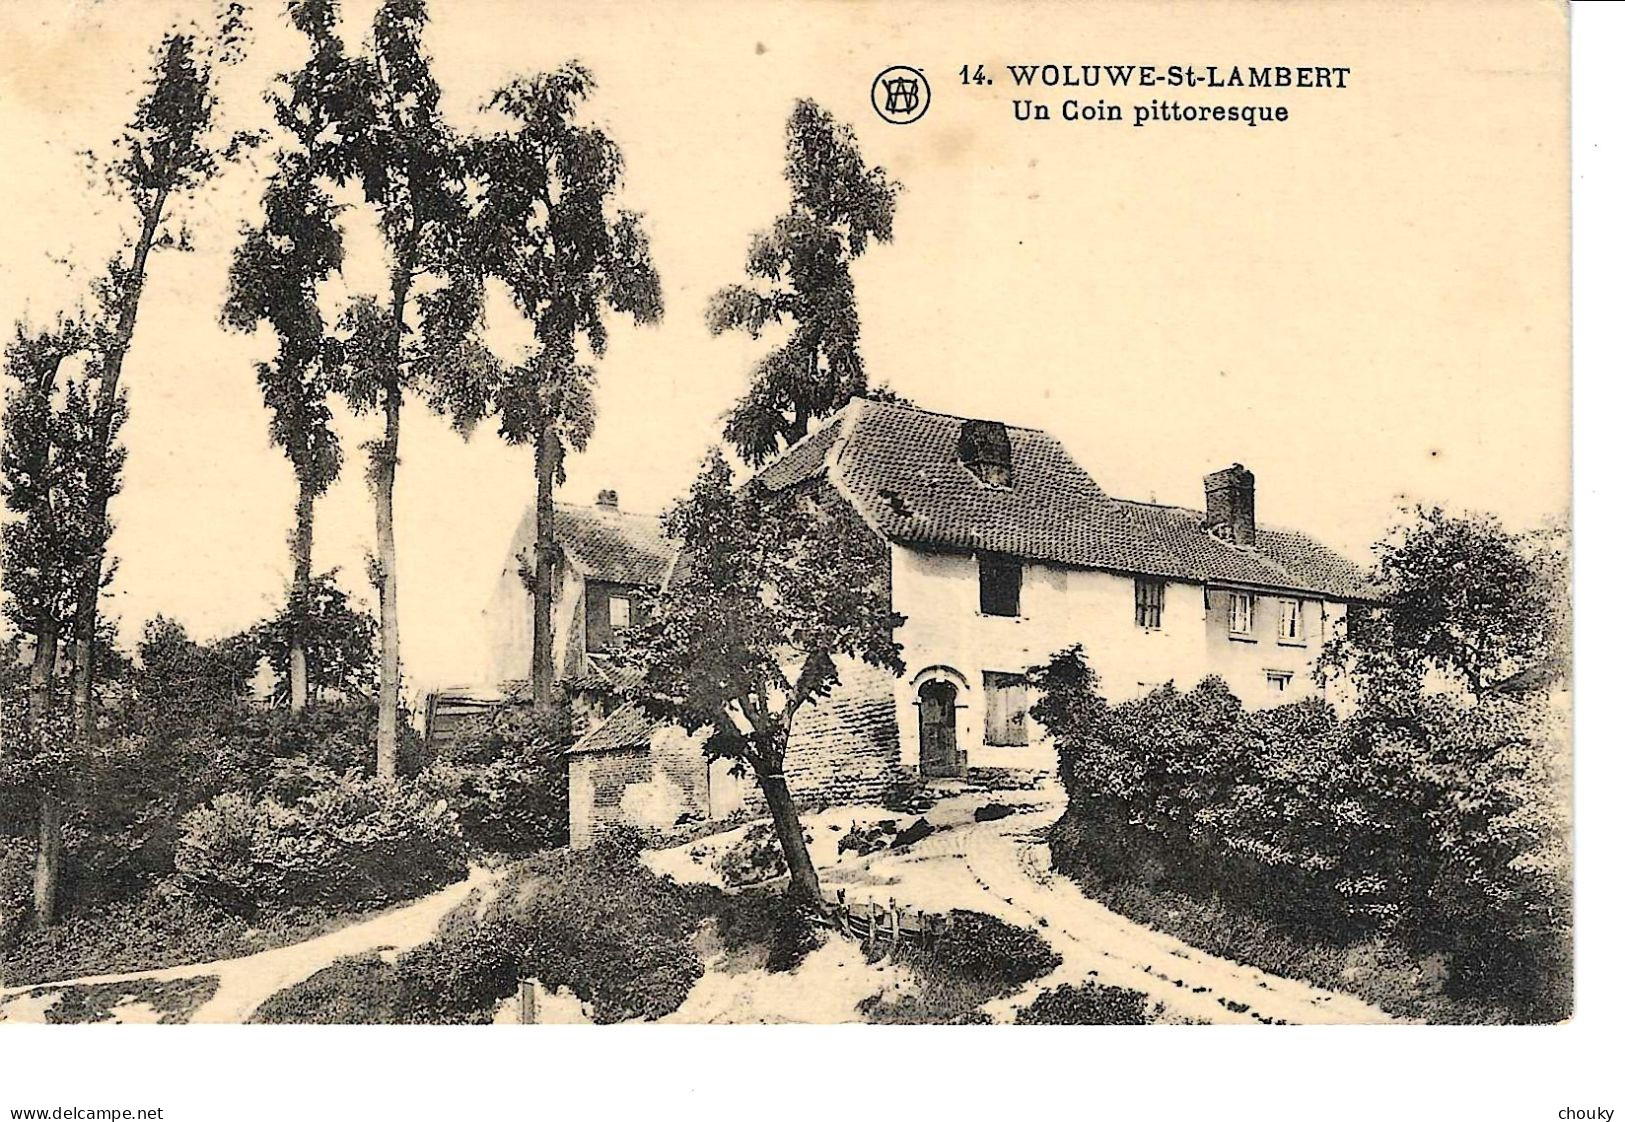 Woluwe-Saint-Lambert (1929) - Woluwe-St-Lambert - St-Lambrechts-Woluwe